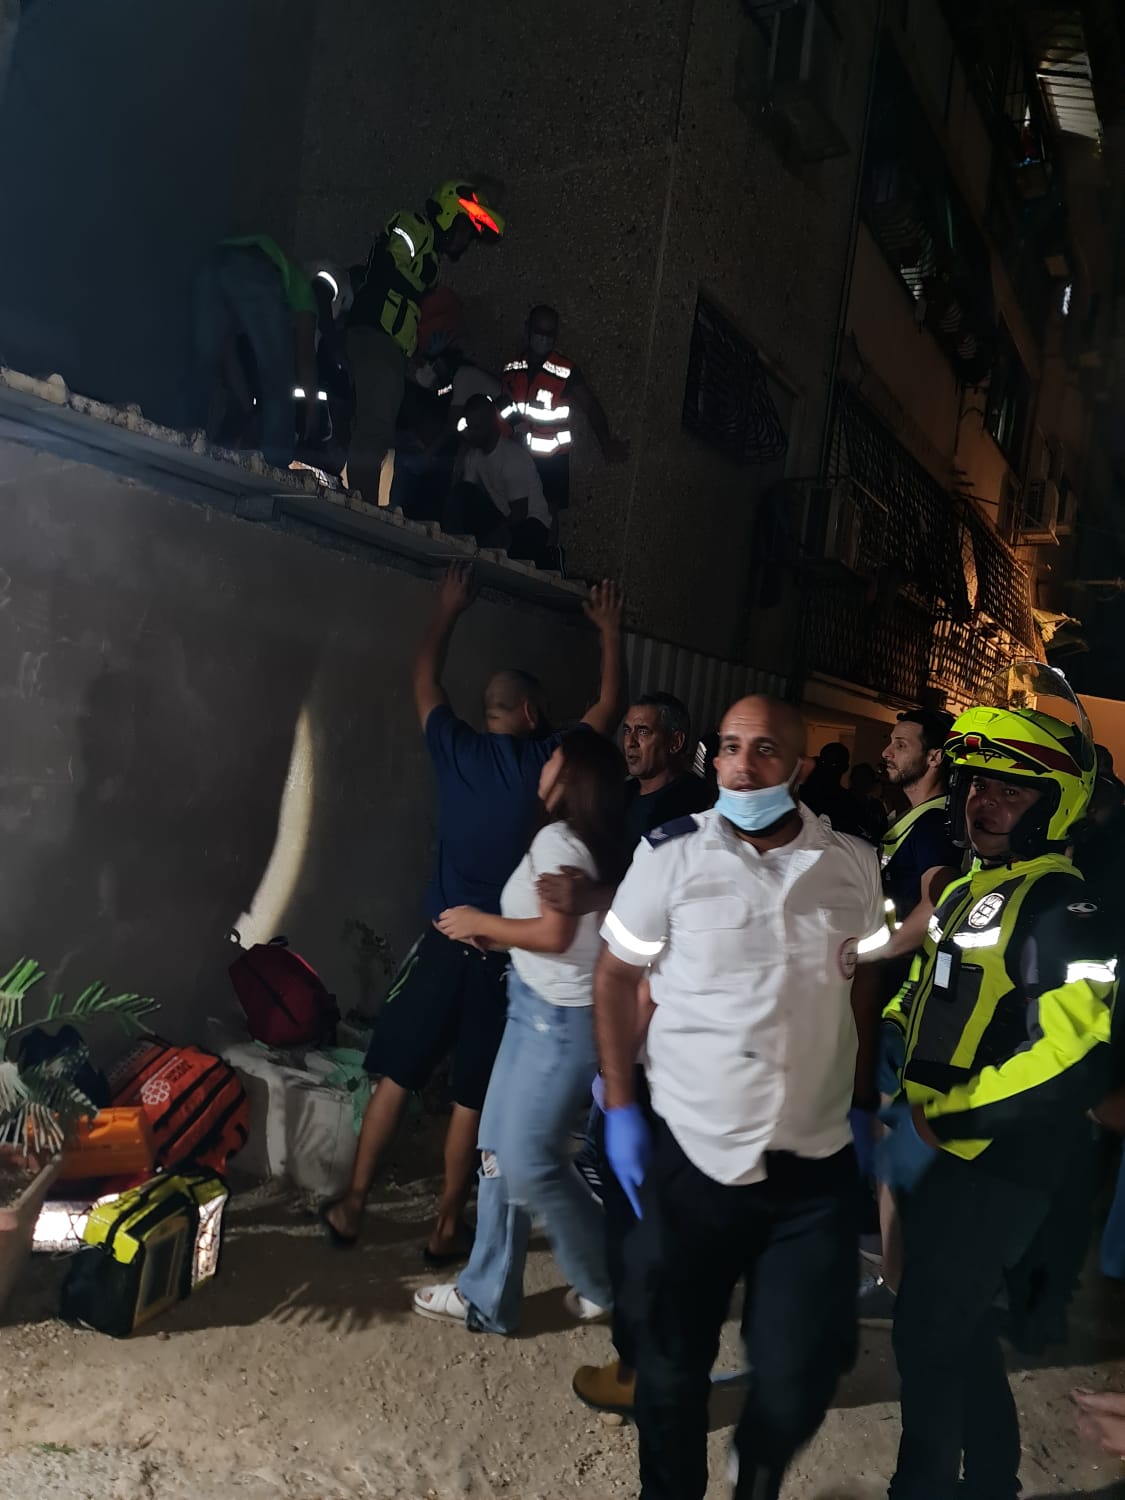  اللد: اصابة متوسطة لرجل سقط في بئر مصعد بالمدينة